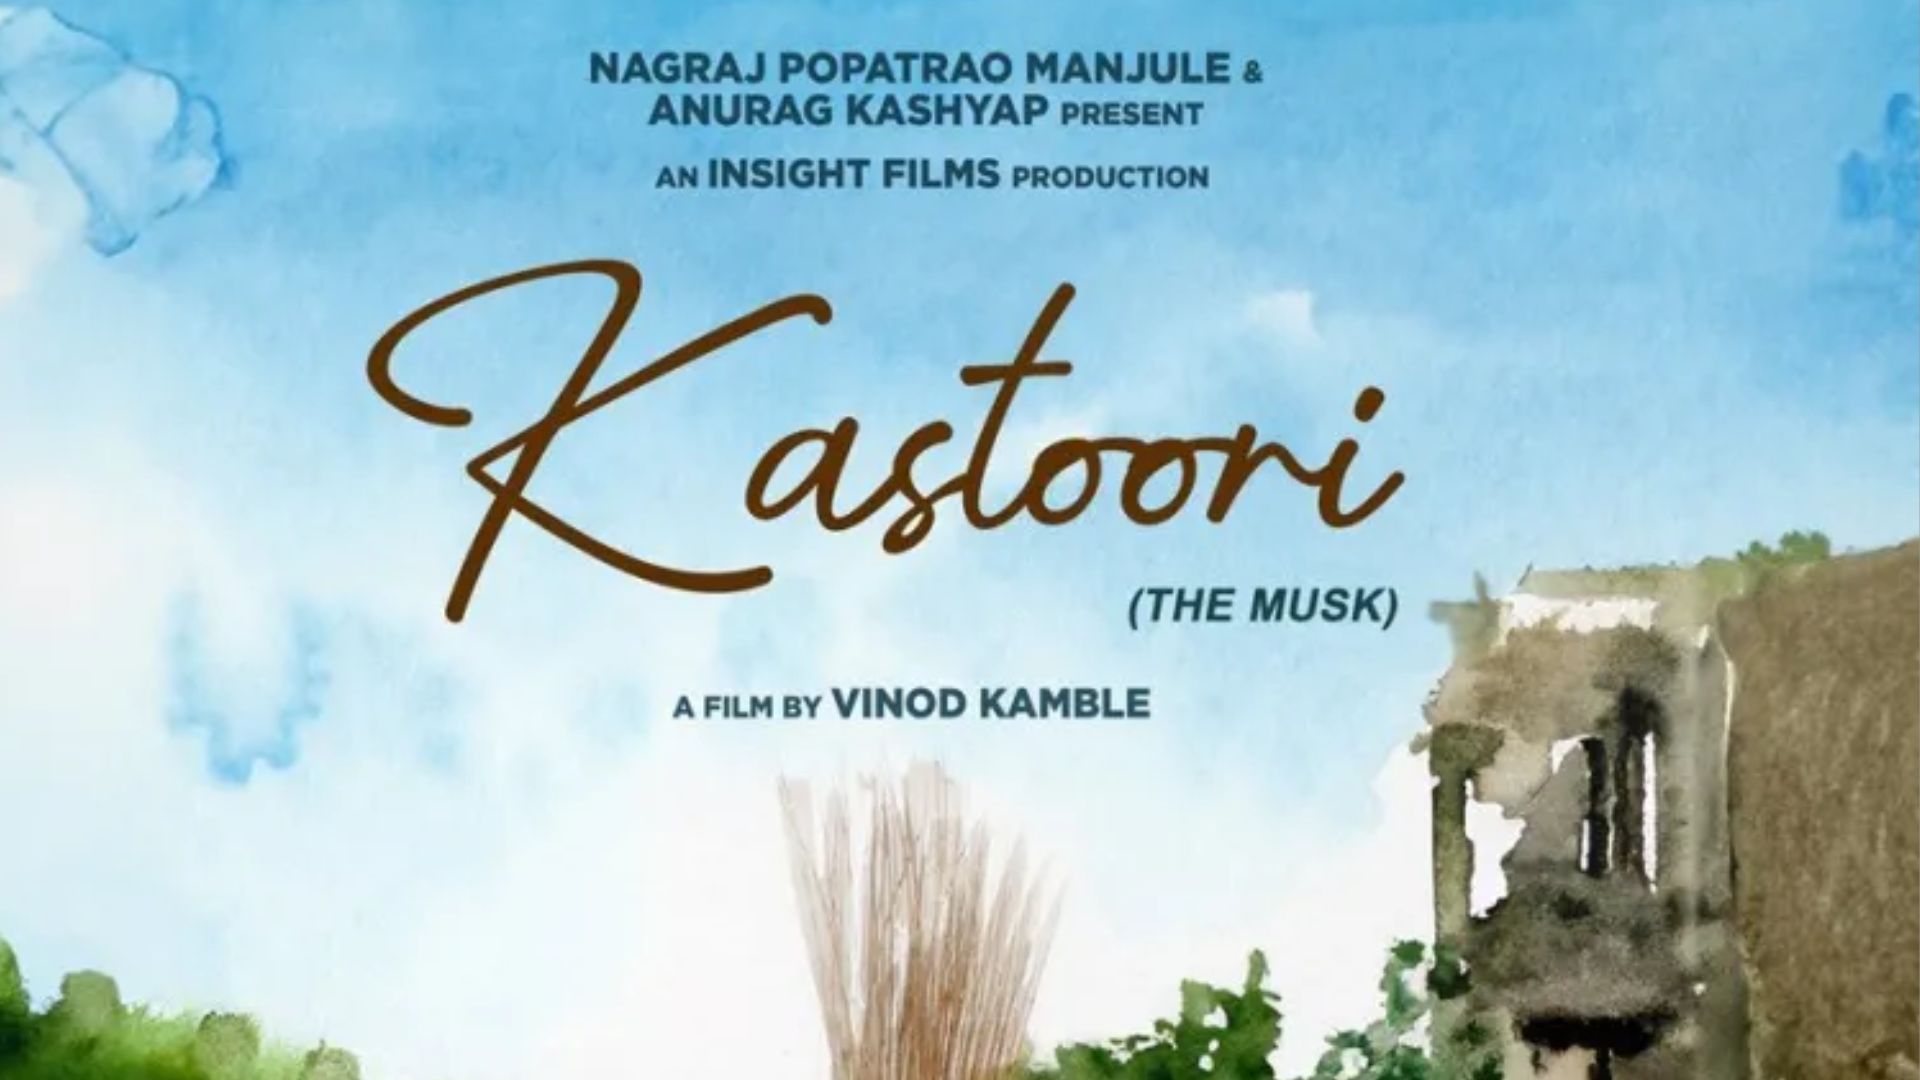 Anurag Kashyap unveils teaser of 'Kastoori'